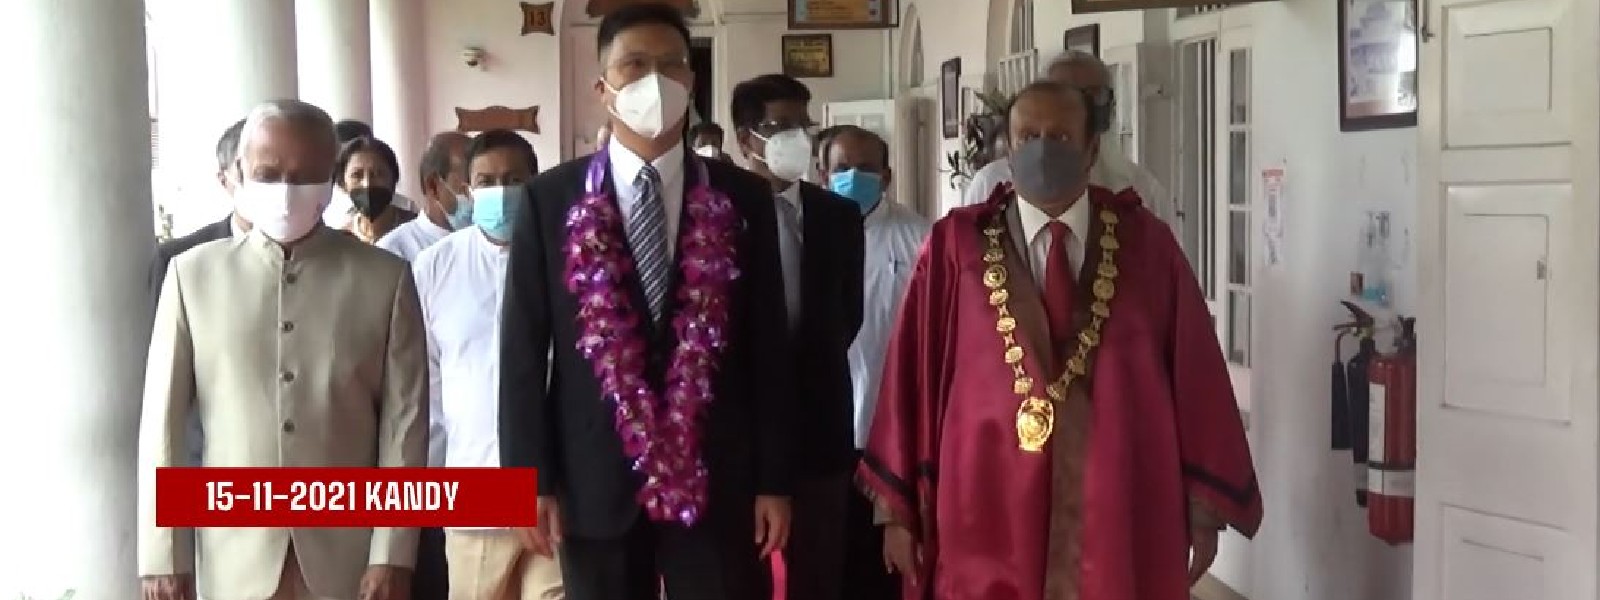 China inks friendly accord with Kandy Municipality